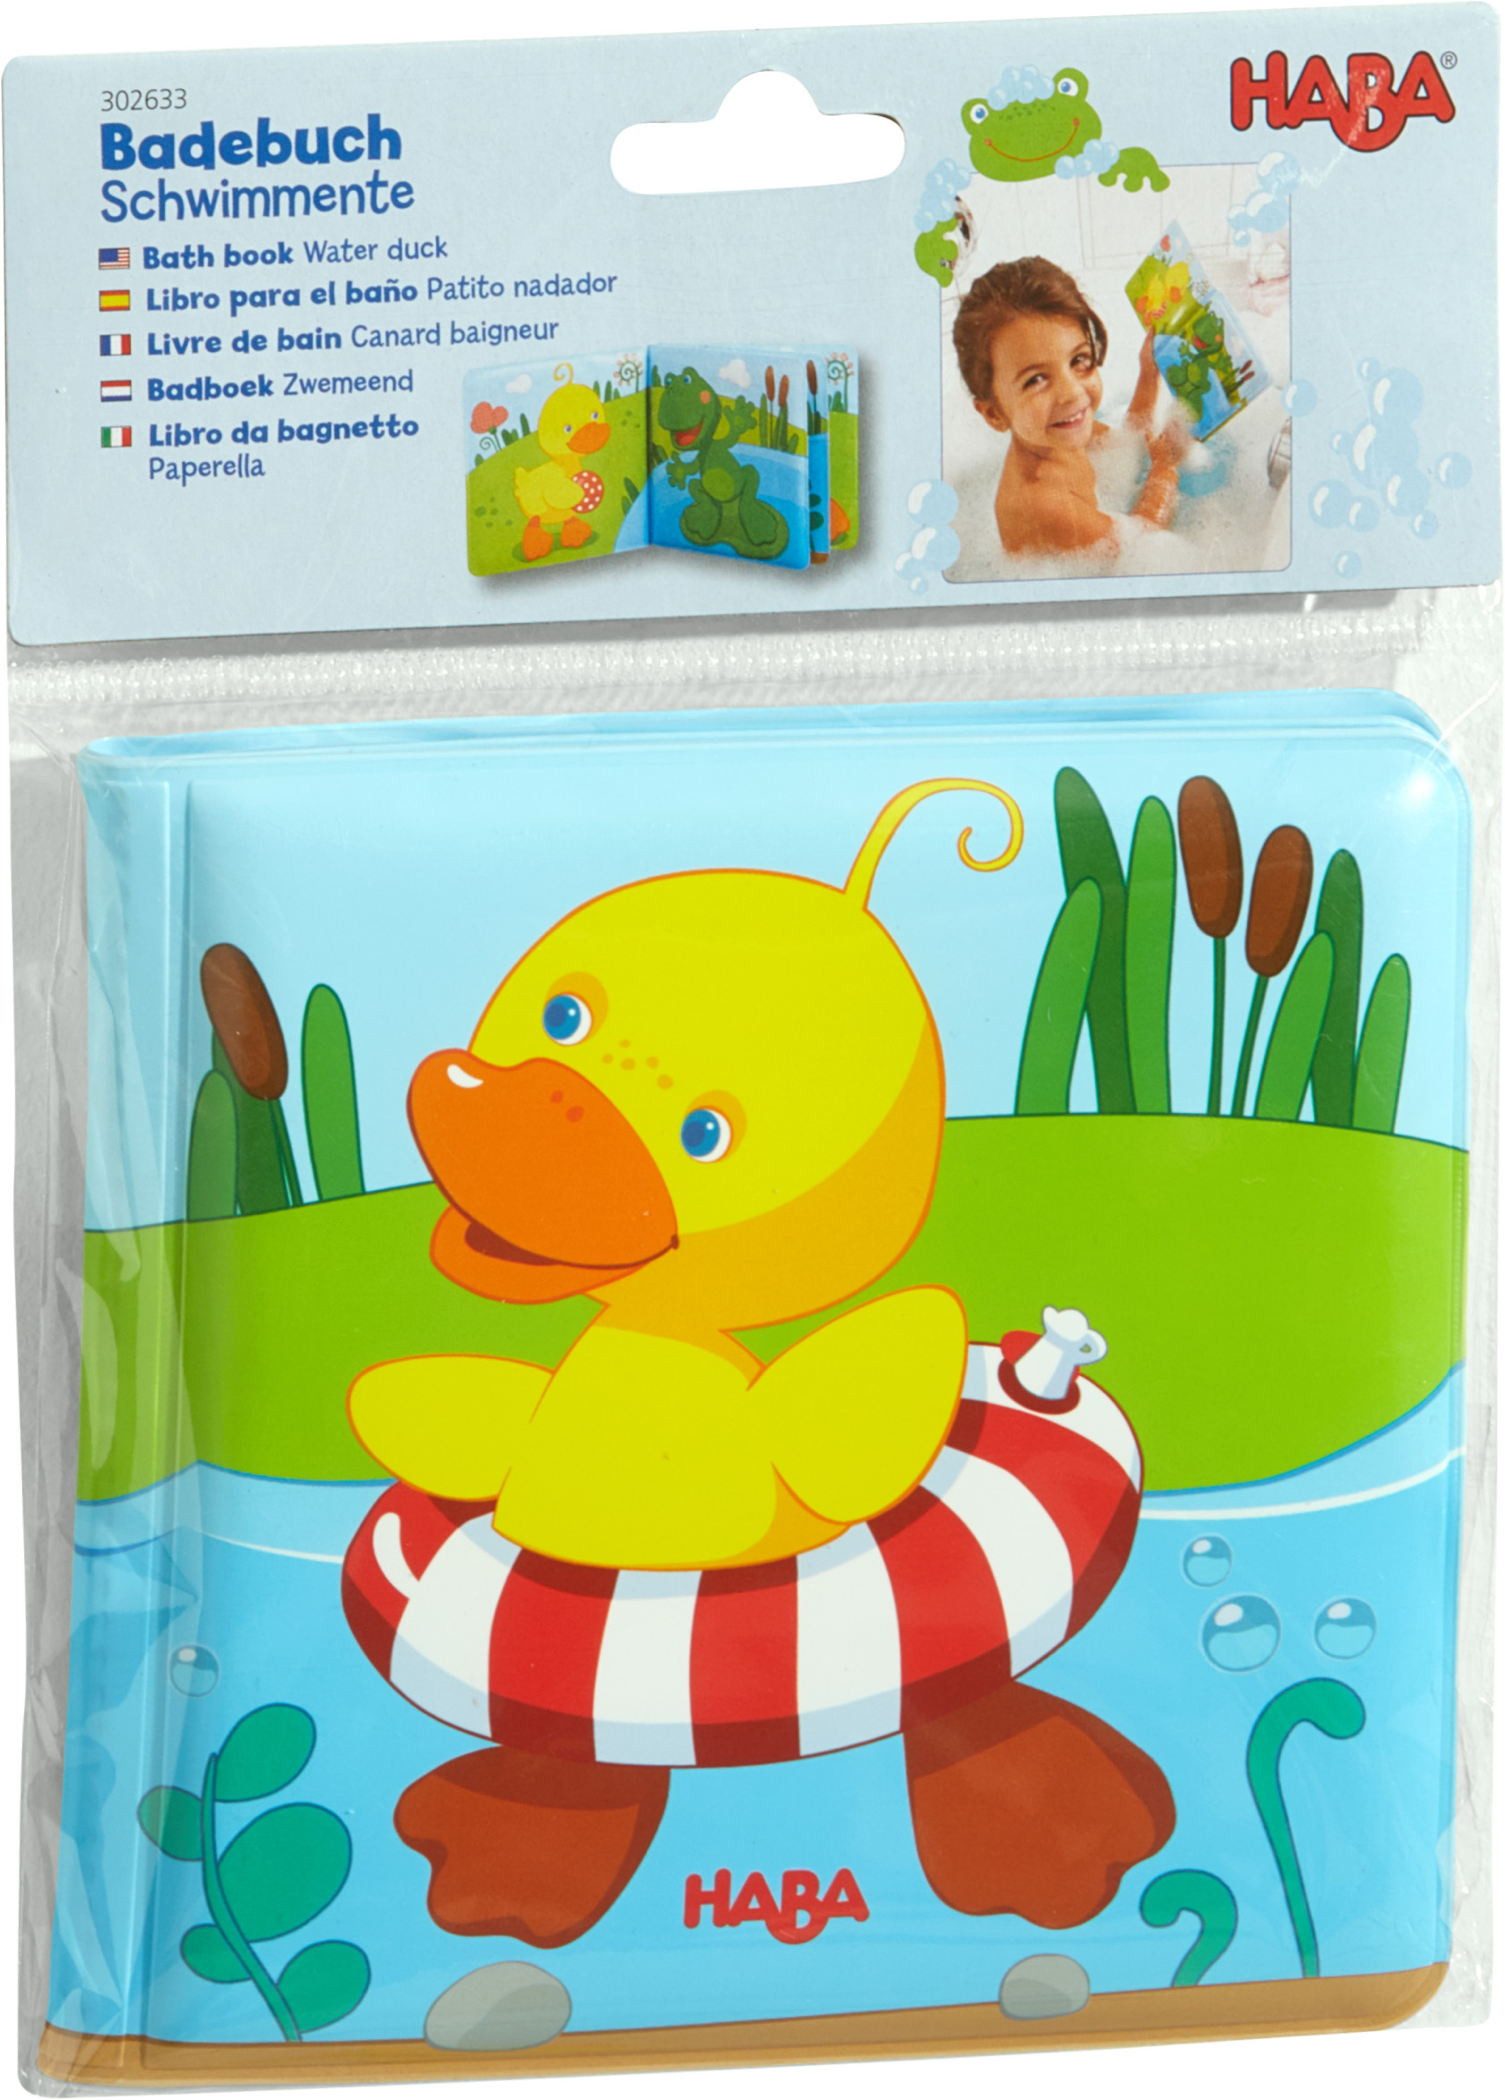 Haba Stoffbuch Babywelt Babyspielbuch Badebuch Schwimmente 1302633001